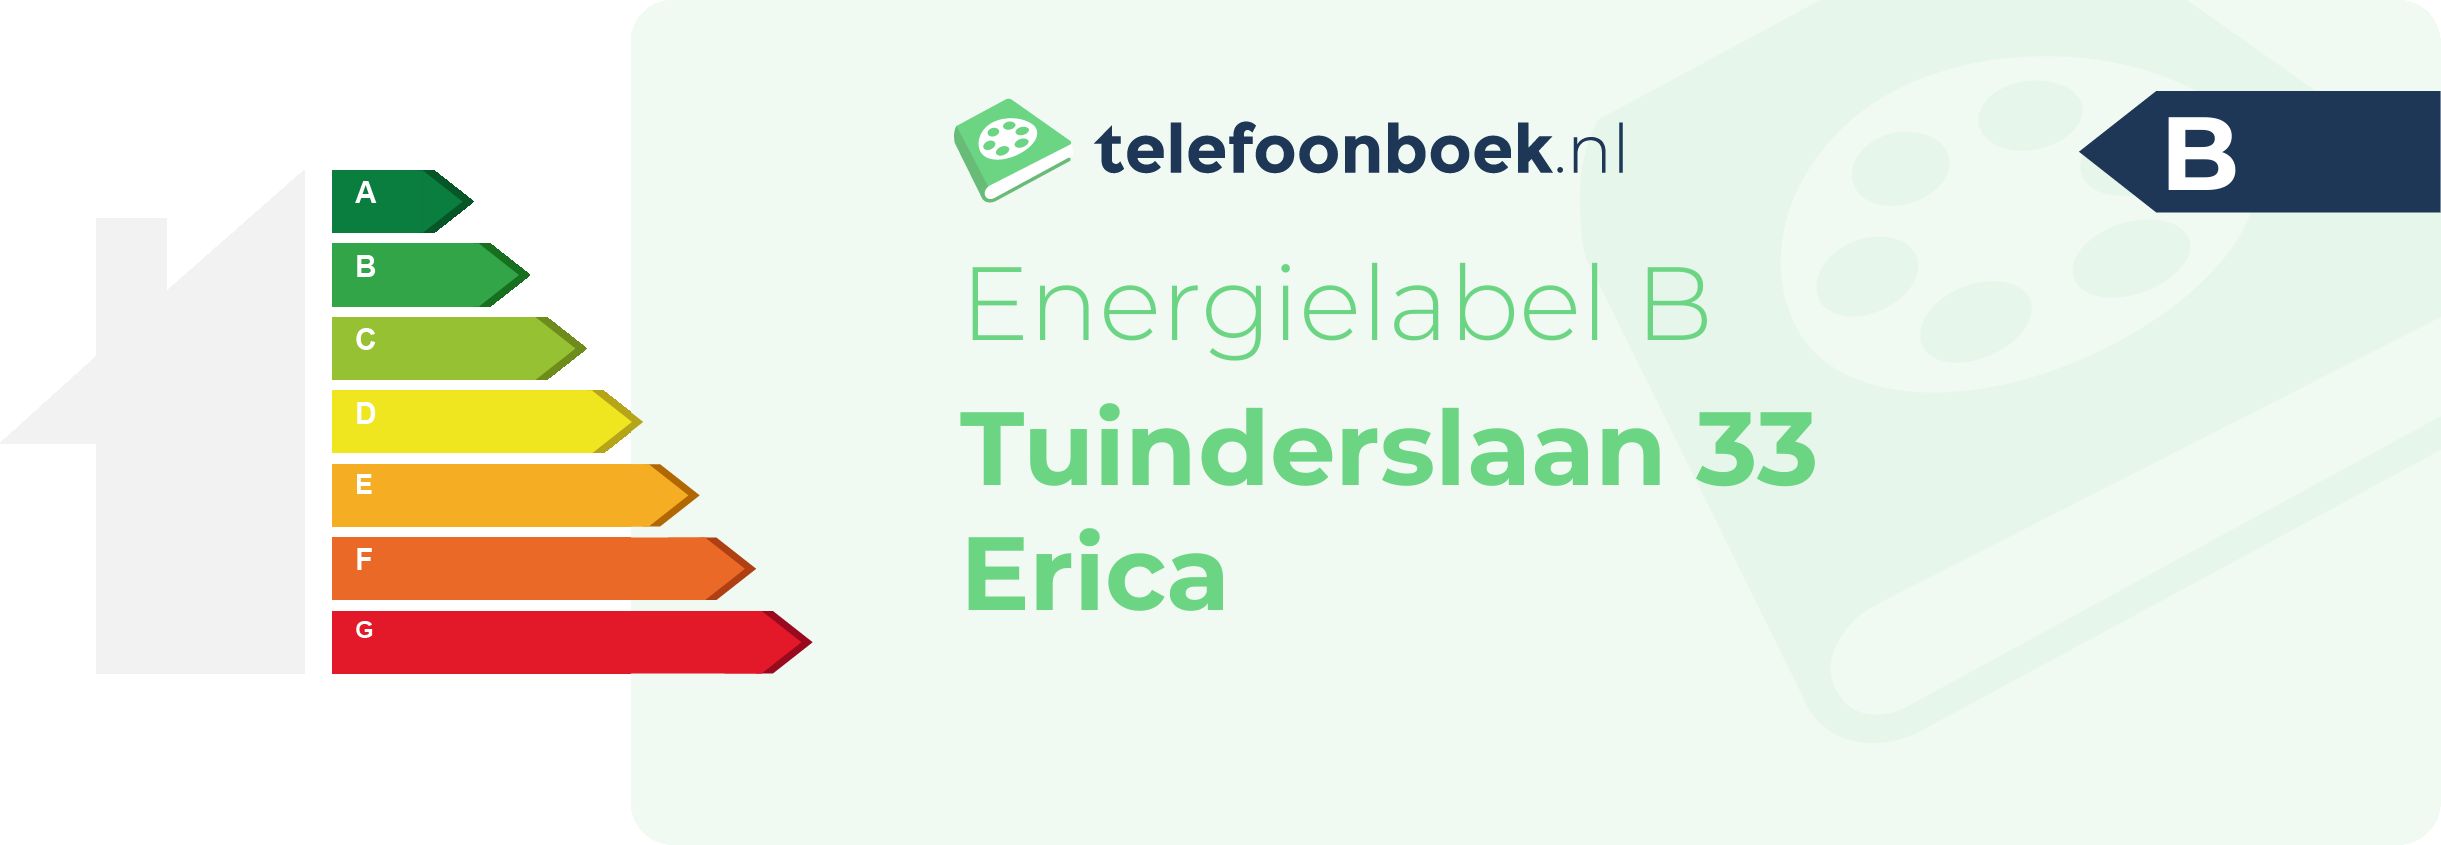 Energielabel Tuinderslaan 33 Erica